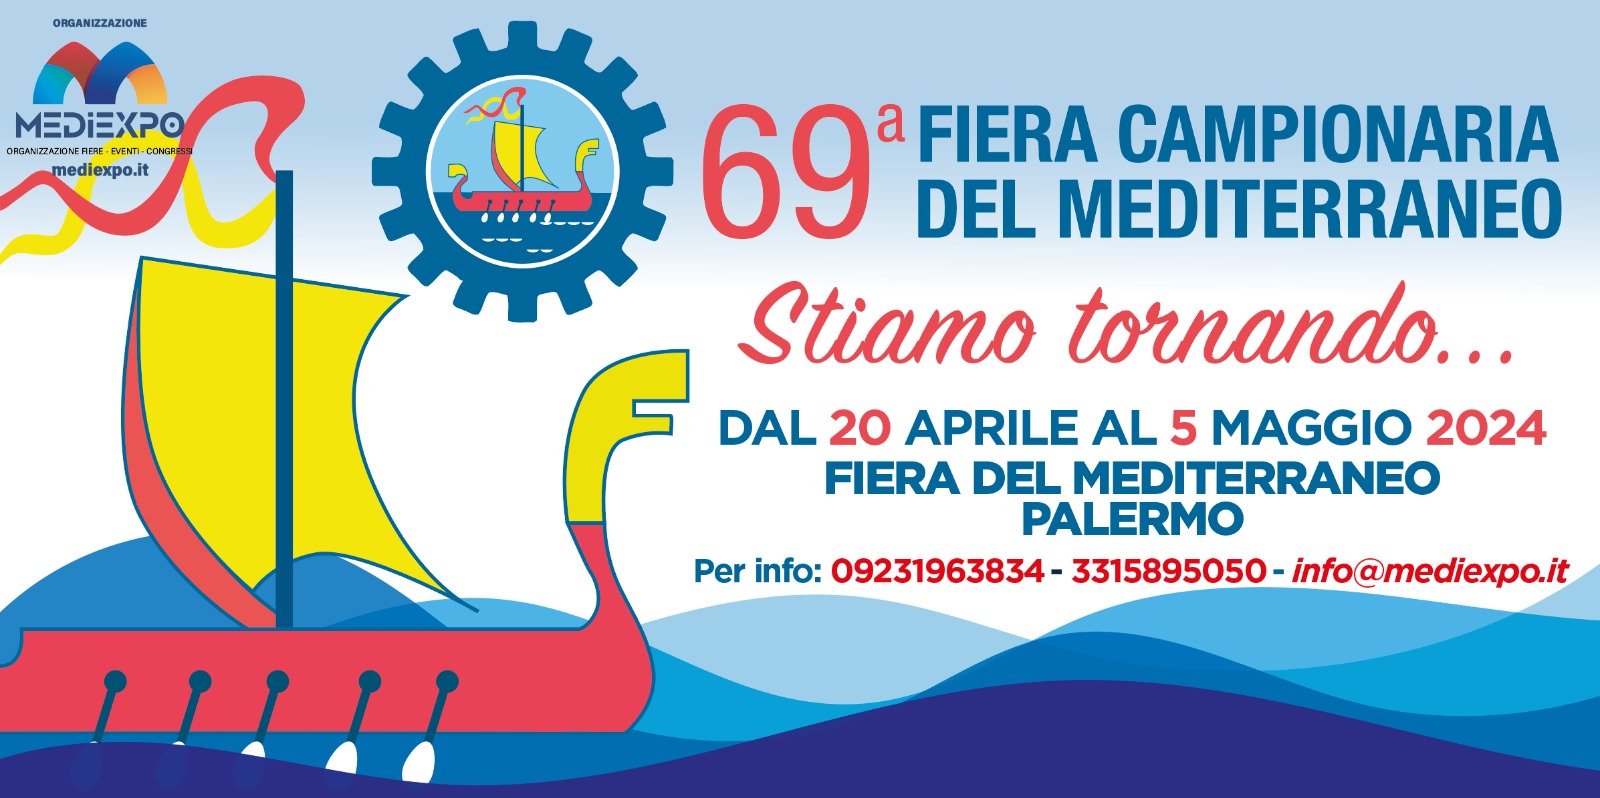 Palermo - 69° FIERA CAMPIONARIA DEL MEDITERRANEO